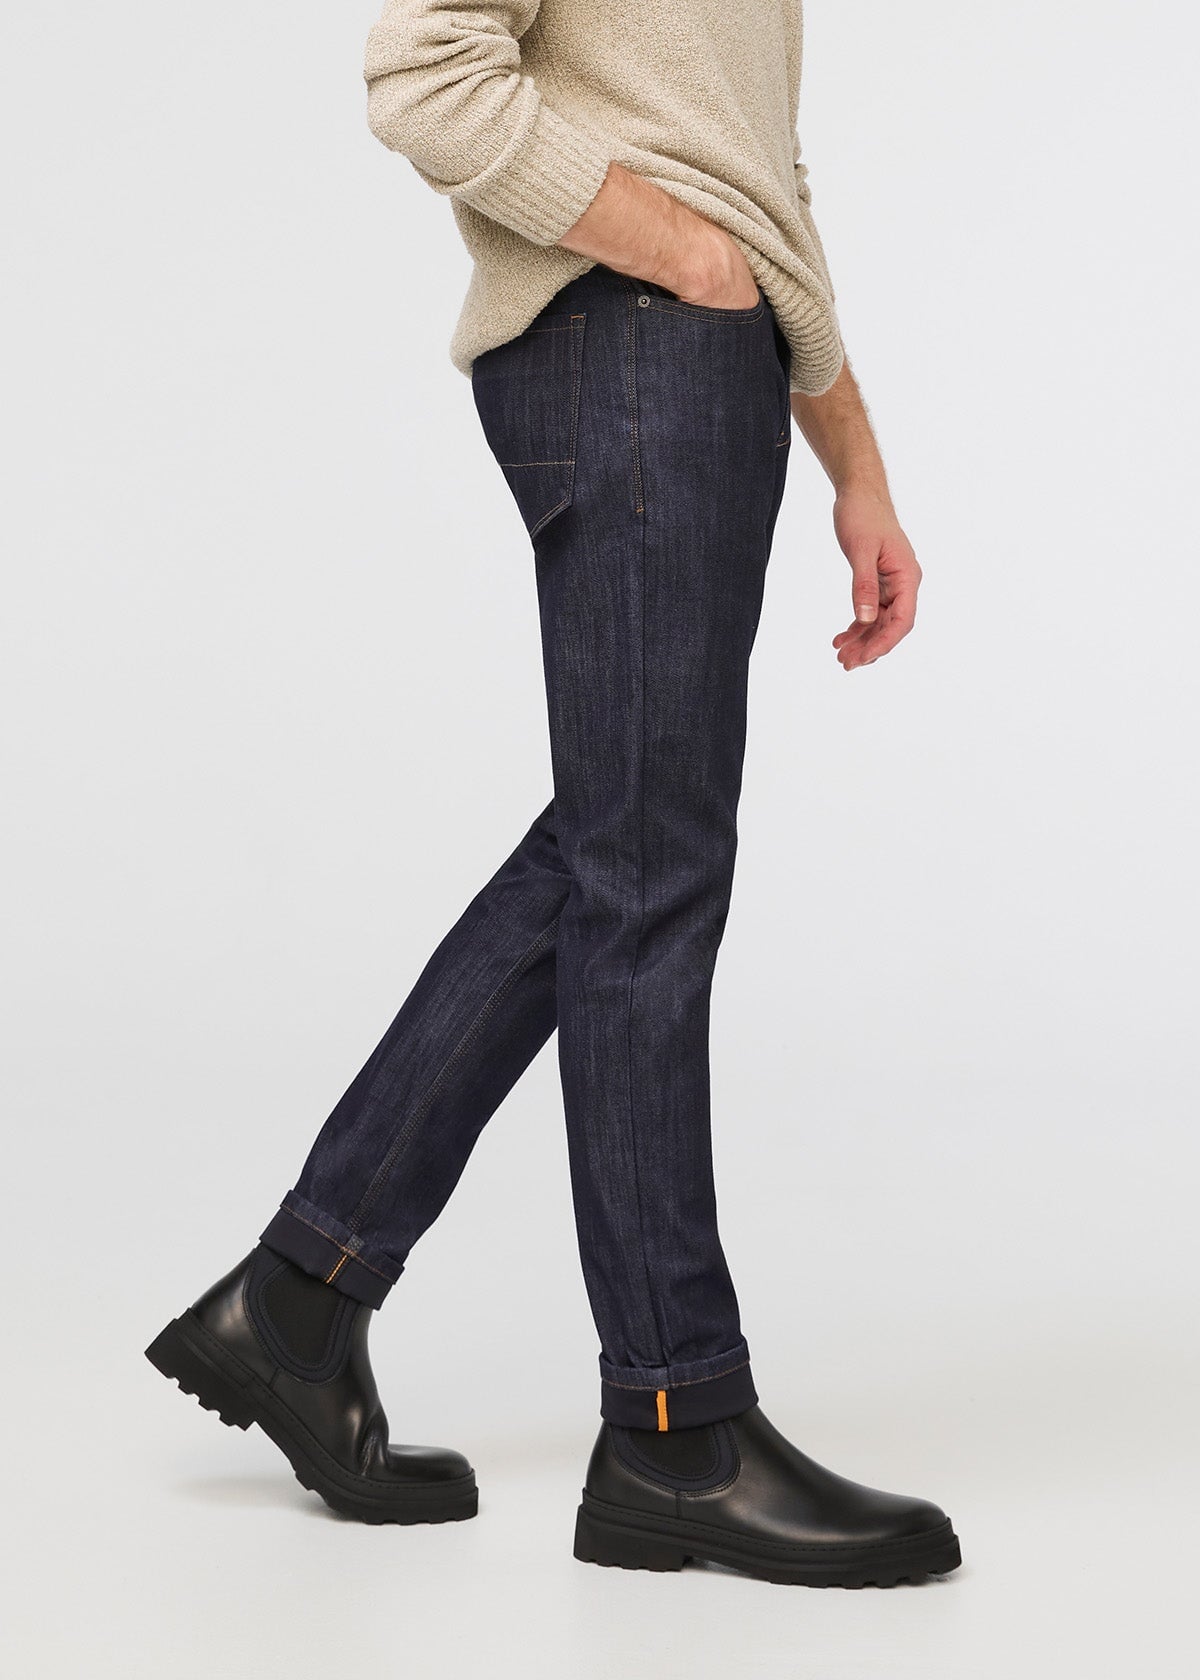 Buy Slim Fit Dark Blue Premium Men's Denim Jeans – Peplos Jeans